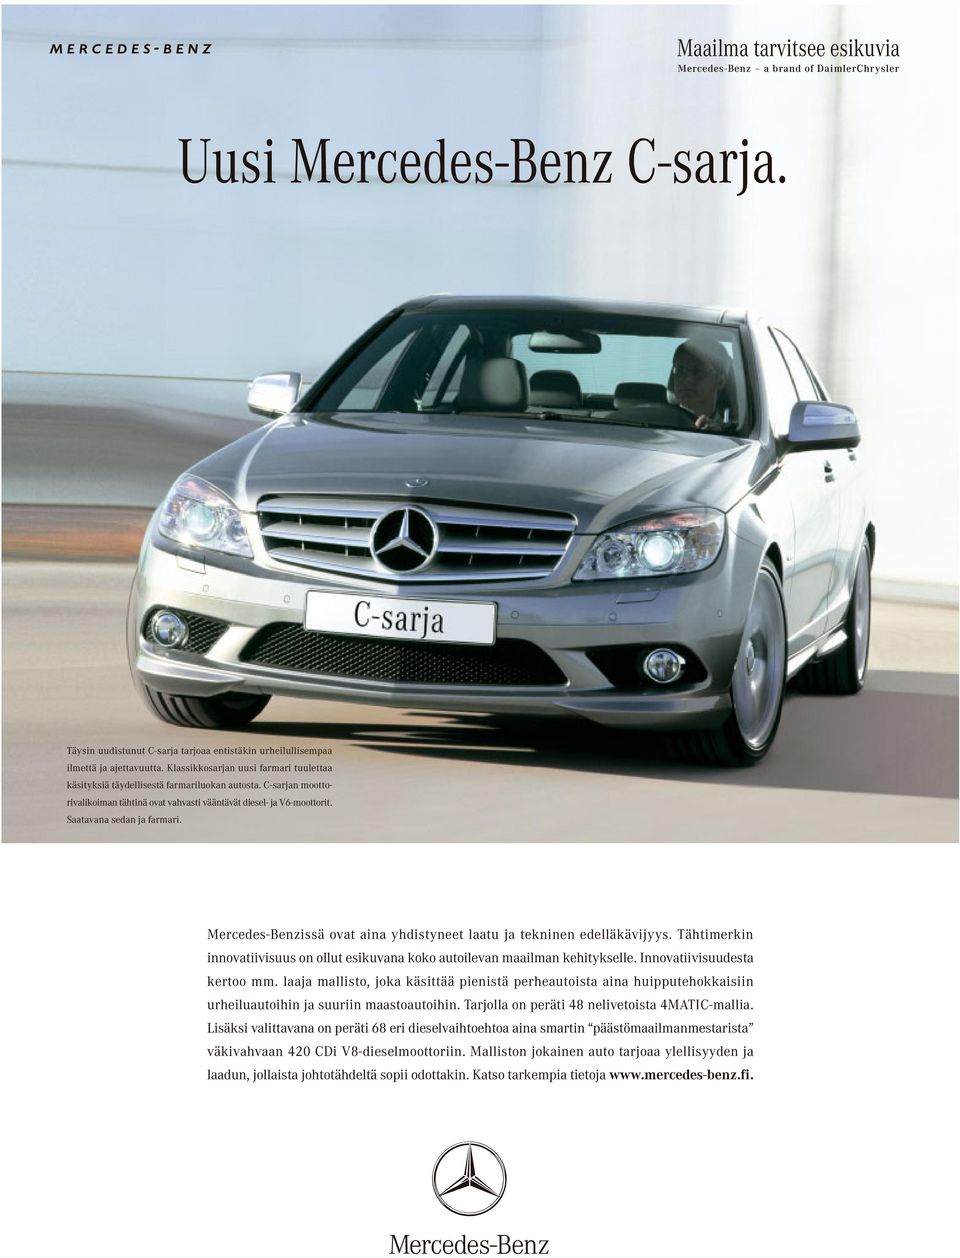 Mercedes-Benzissä ovat aina yhdistyneet laatu ja tekninen edelläkävijyys. Tähtimerkin innovatiivisuus on ollut esikuvana koko autoilevan maailman kehitykselle. Innovatiivisuudesta kertoo mm.